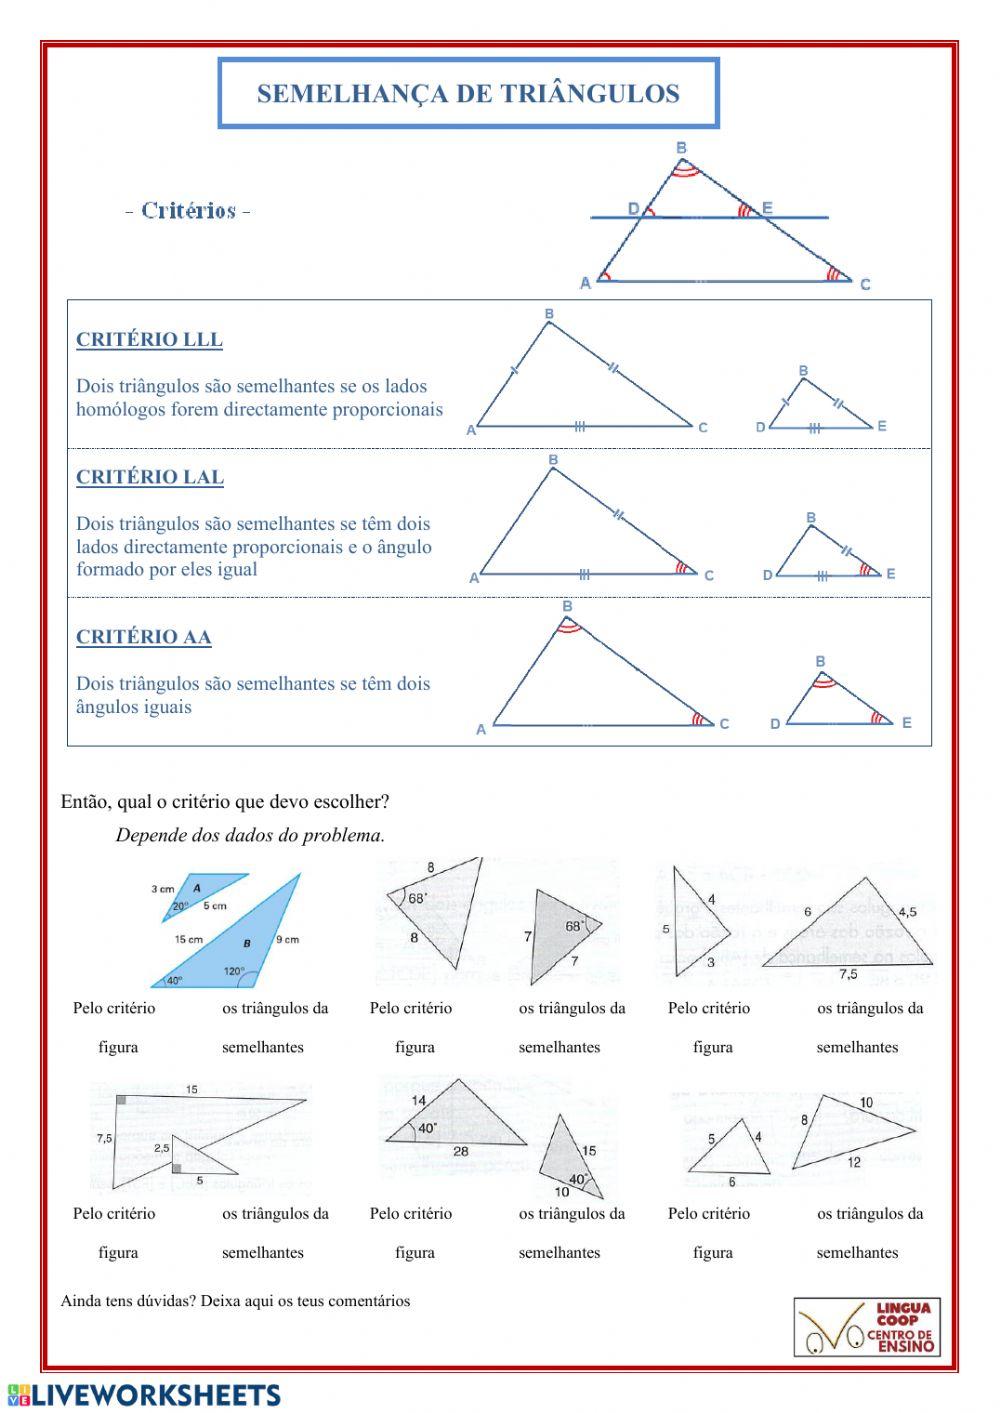 Semelhança de triângulos 7.1